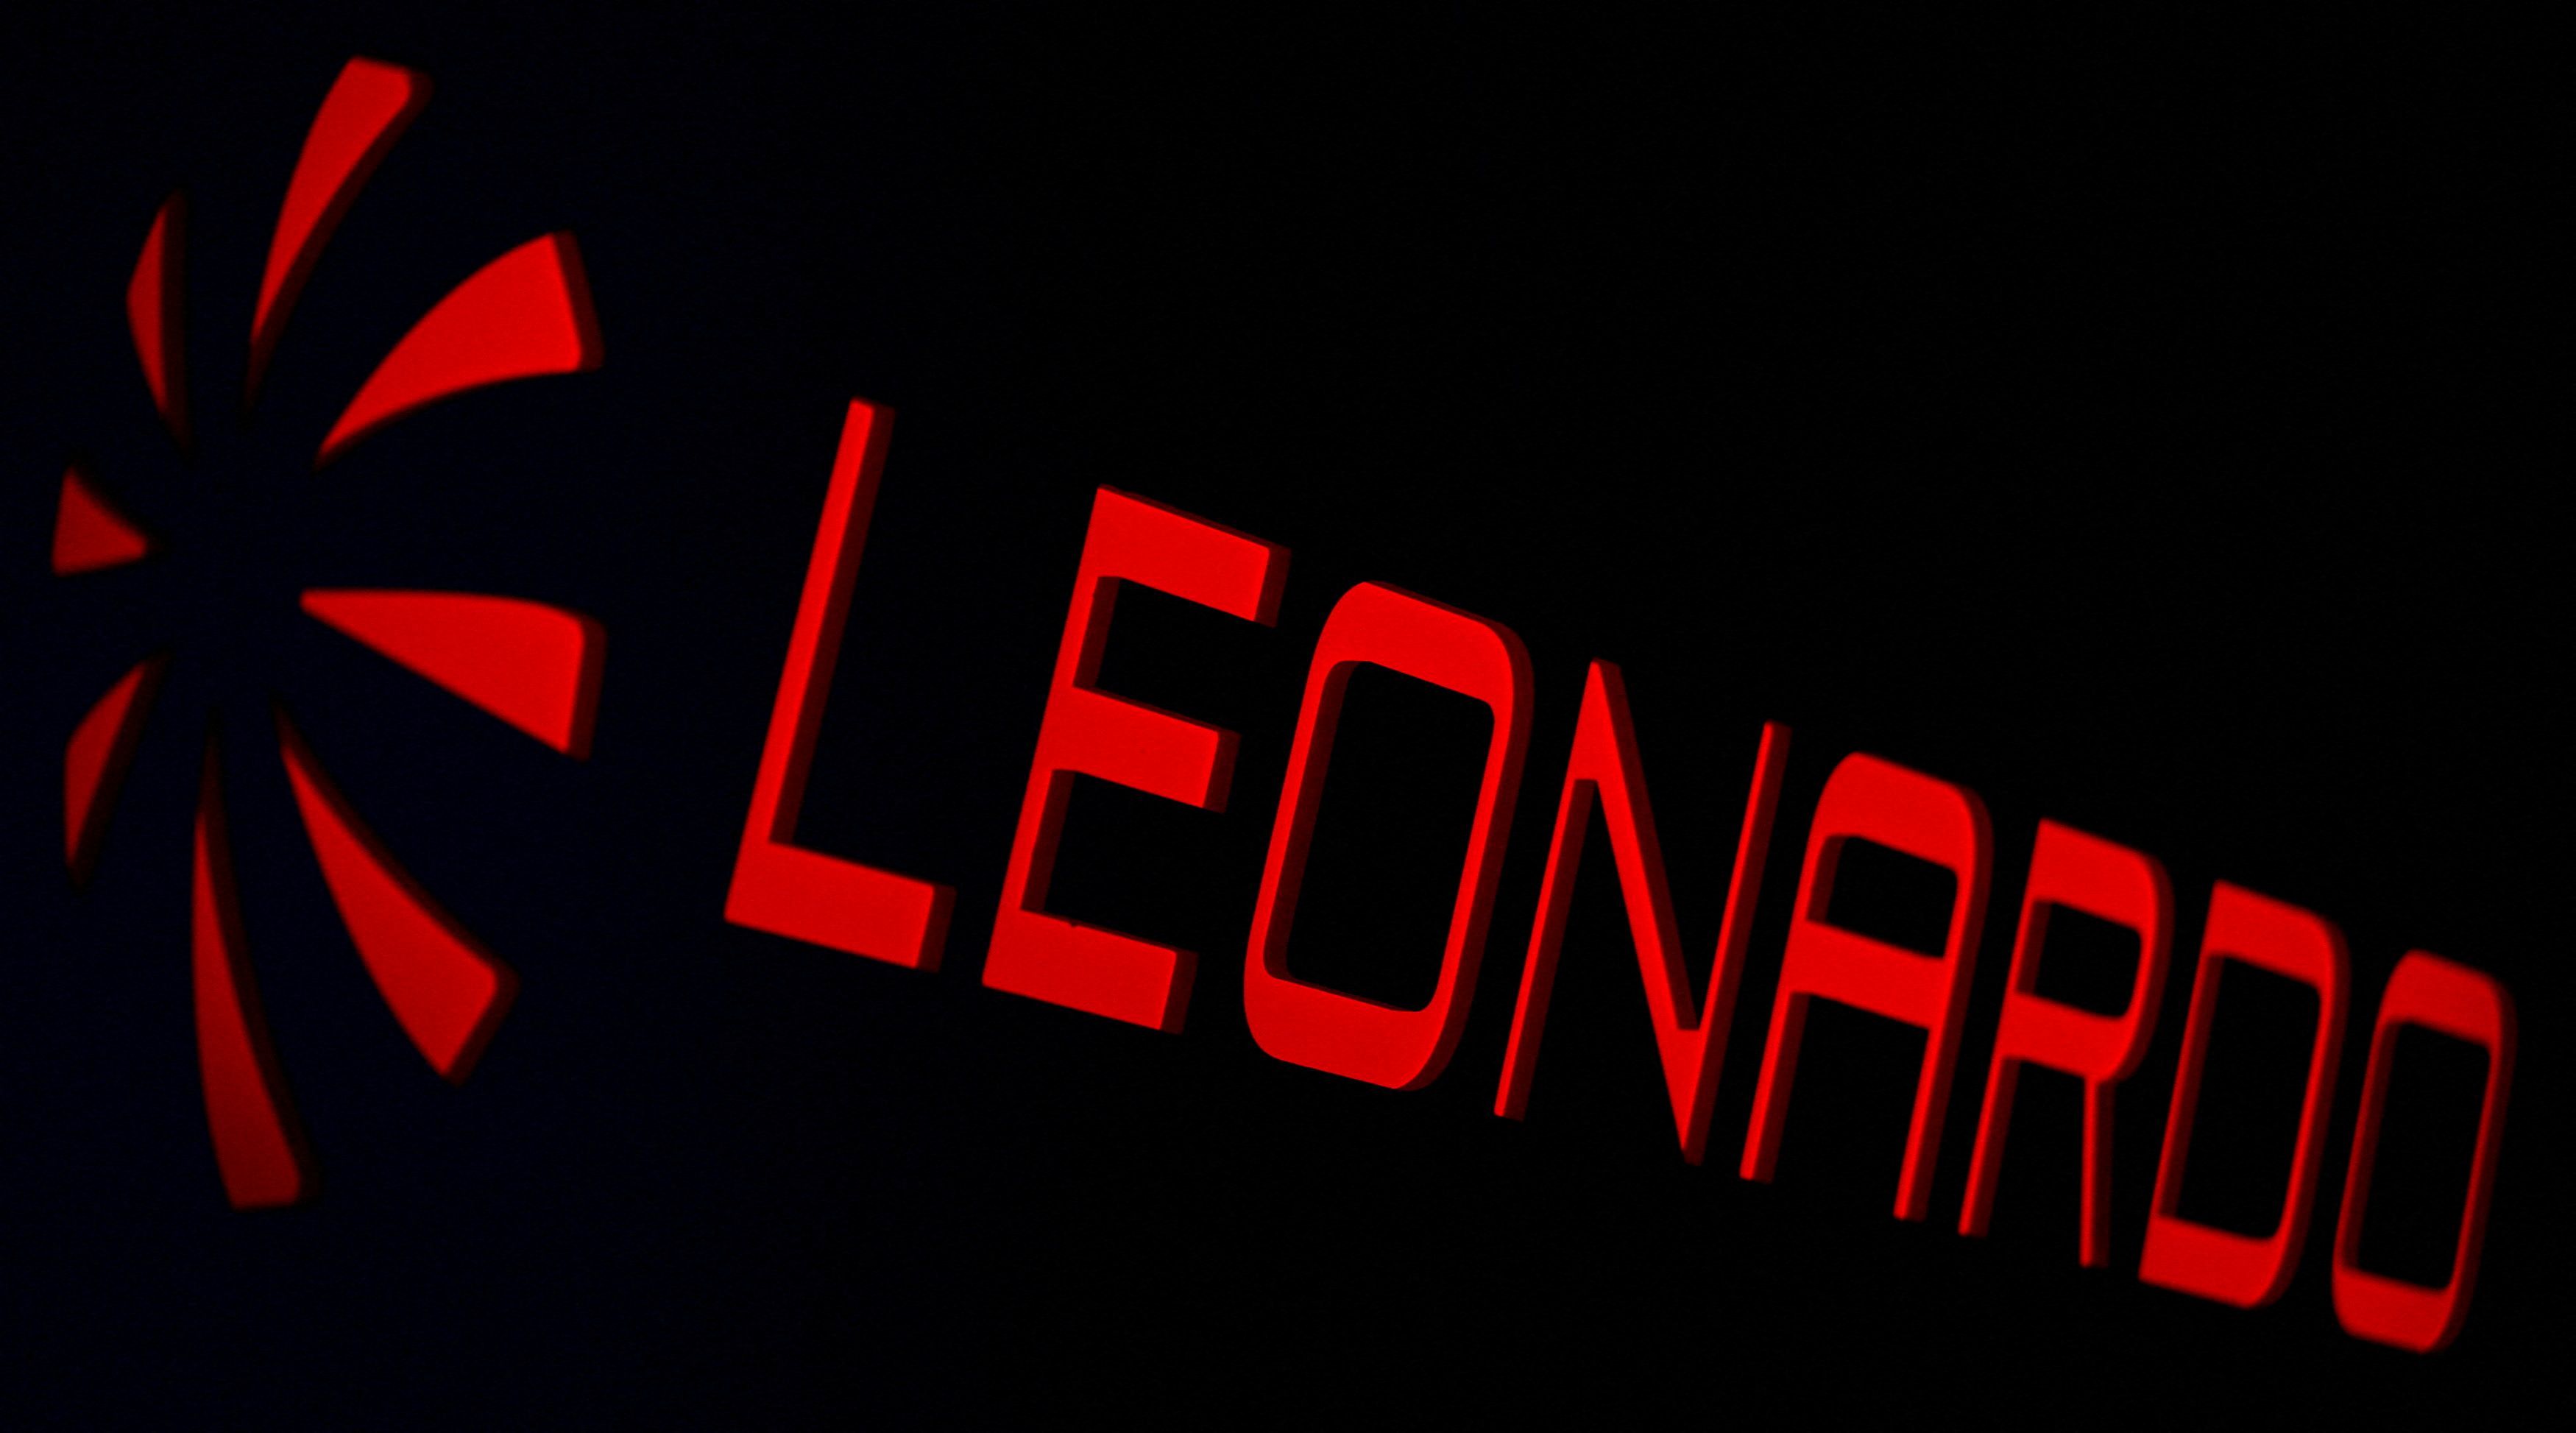 Leonardo's logo